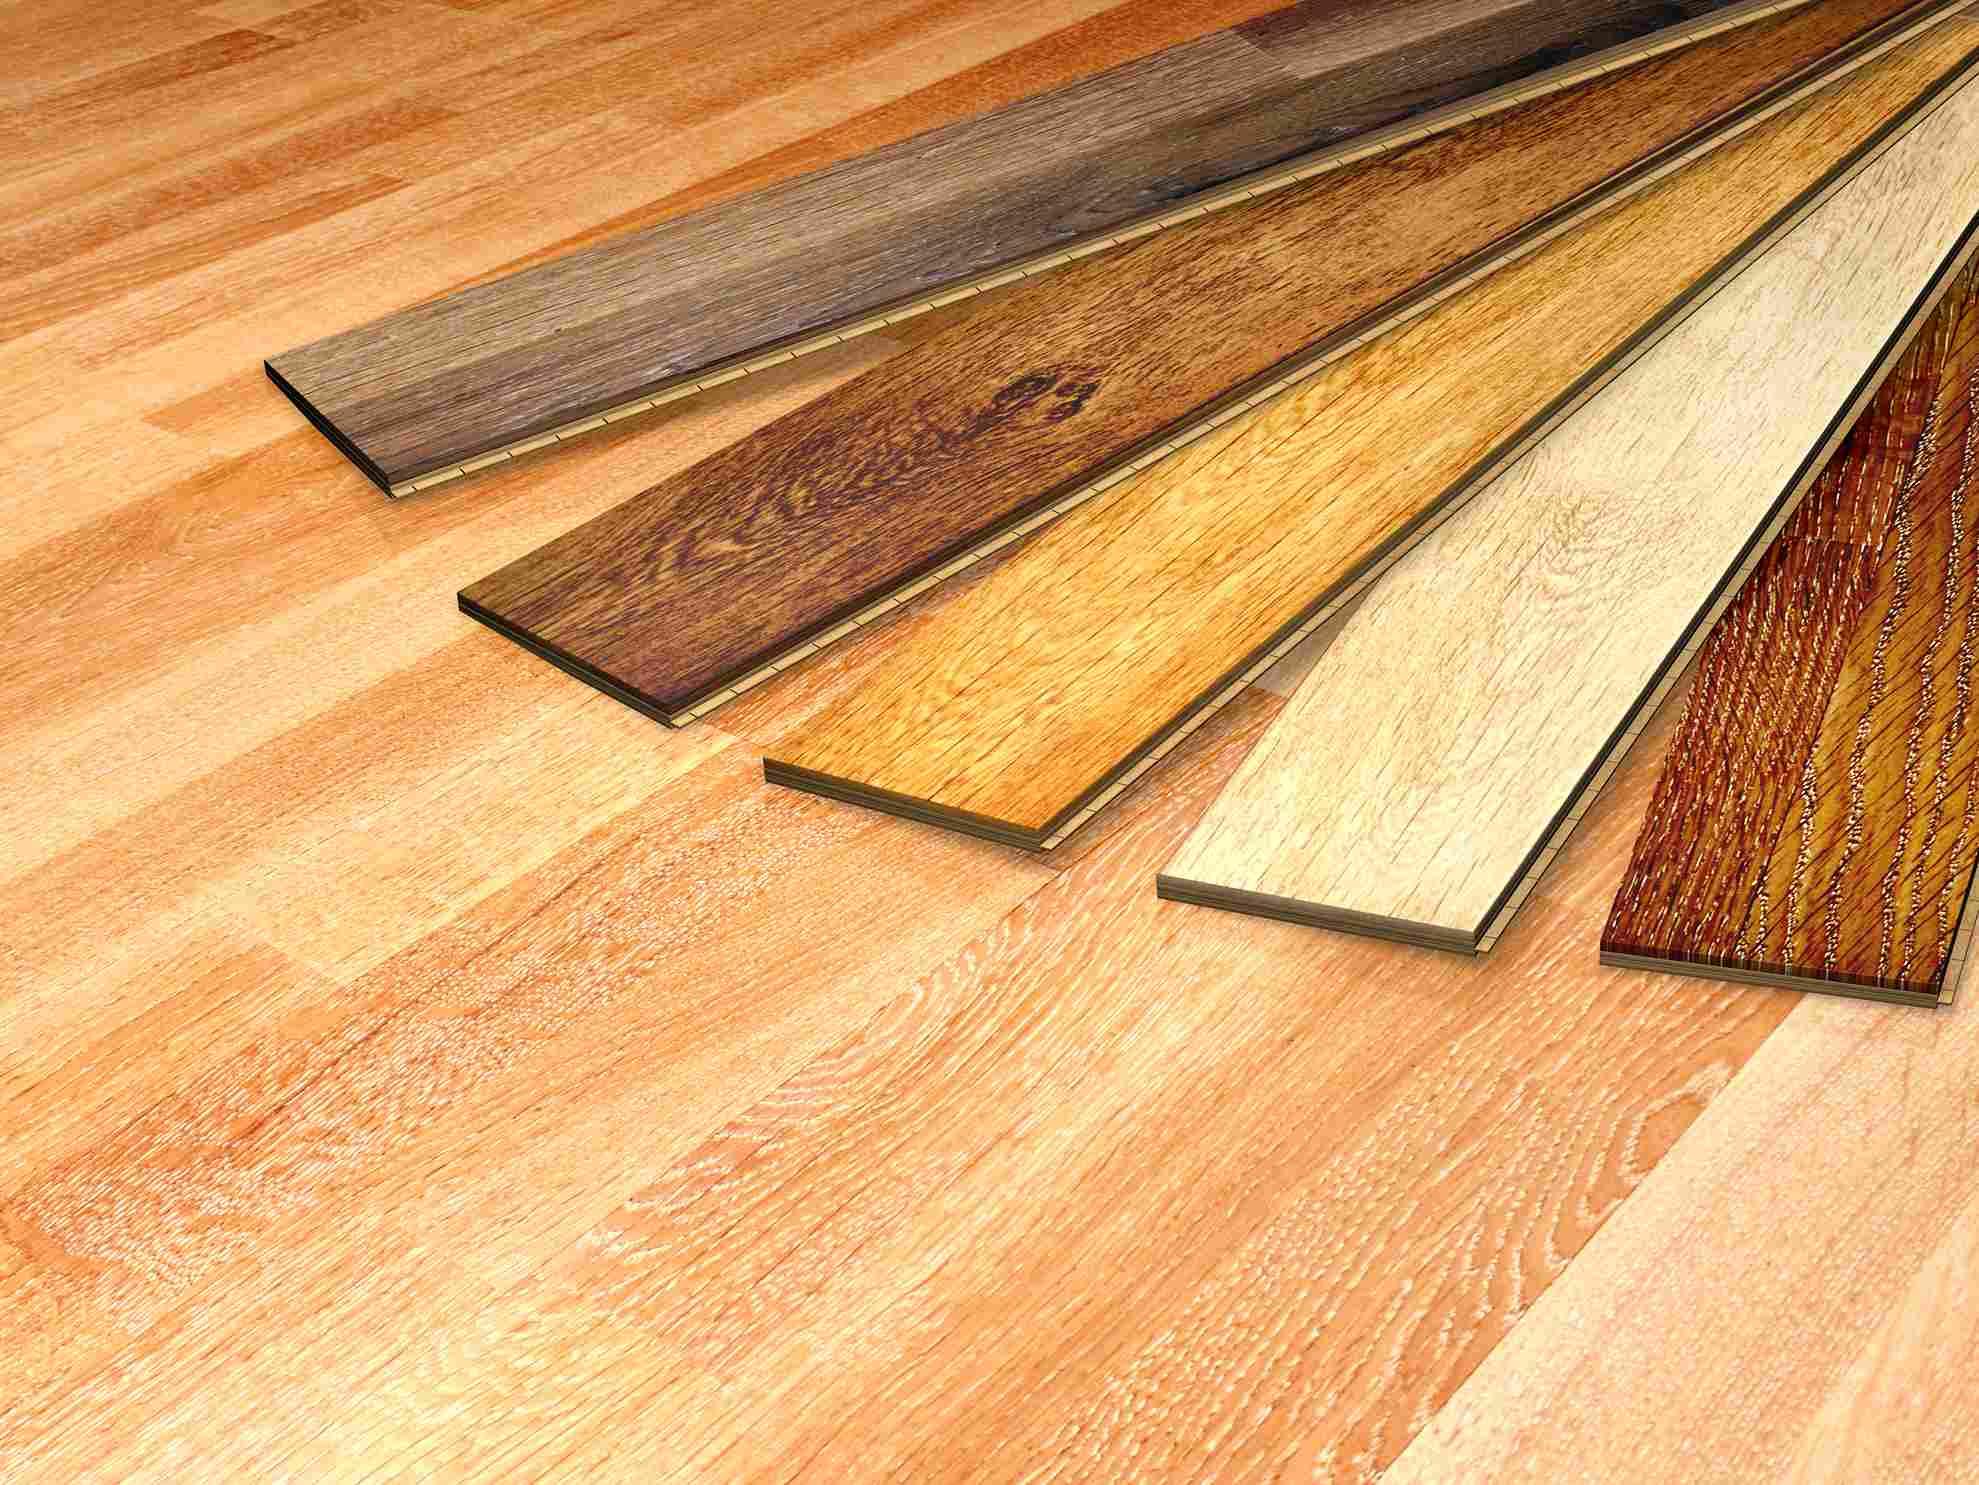 Veneer kayu adalah lembaran kayu tipis yang diperoleh dari proses pengupasan kayu gelondongan.